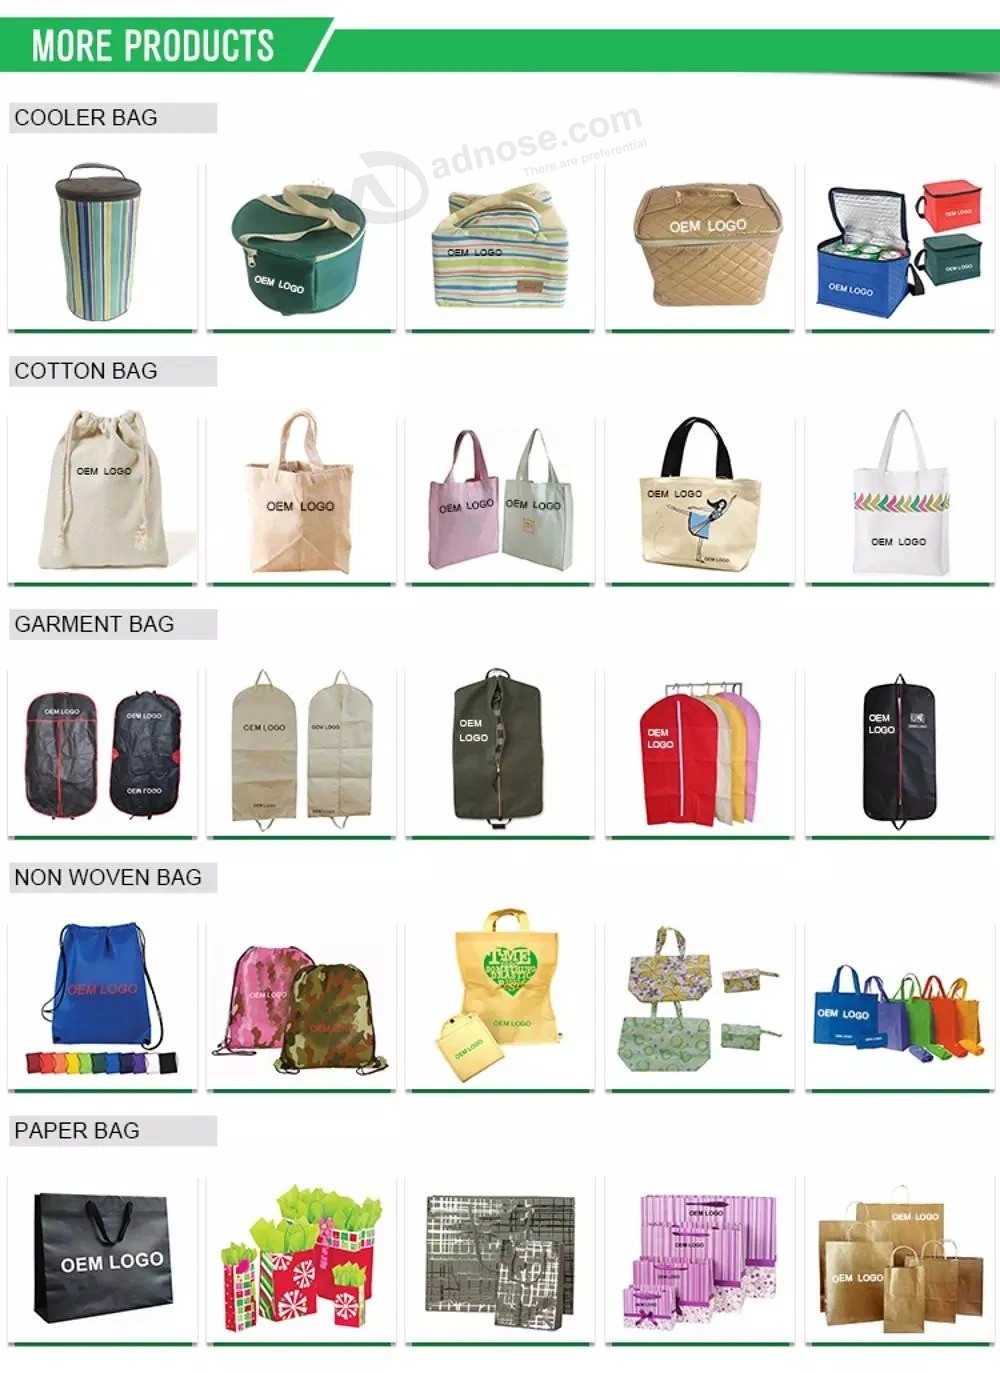 PVC / EVA 화장품 가방, 도매 패션 투명 플라스틱 방수 프로모션 메이크업 세면 용품 포장 파우치 토트 비치 여행 쇼핑 지퍼 핸들 가방